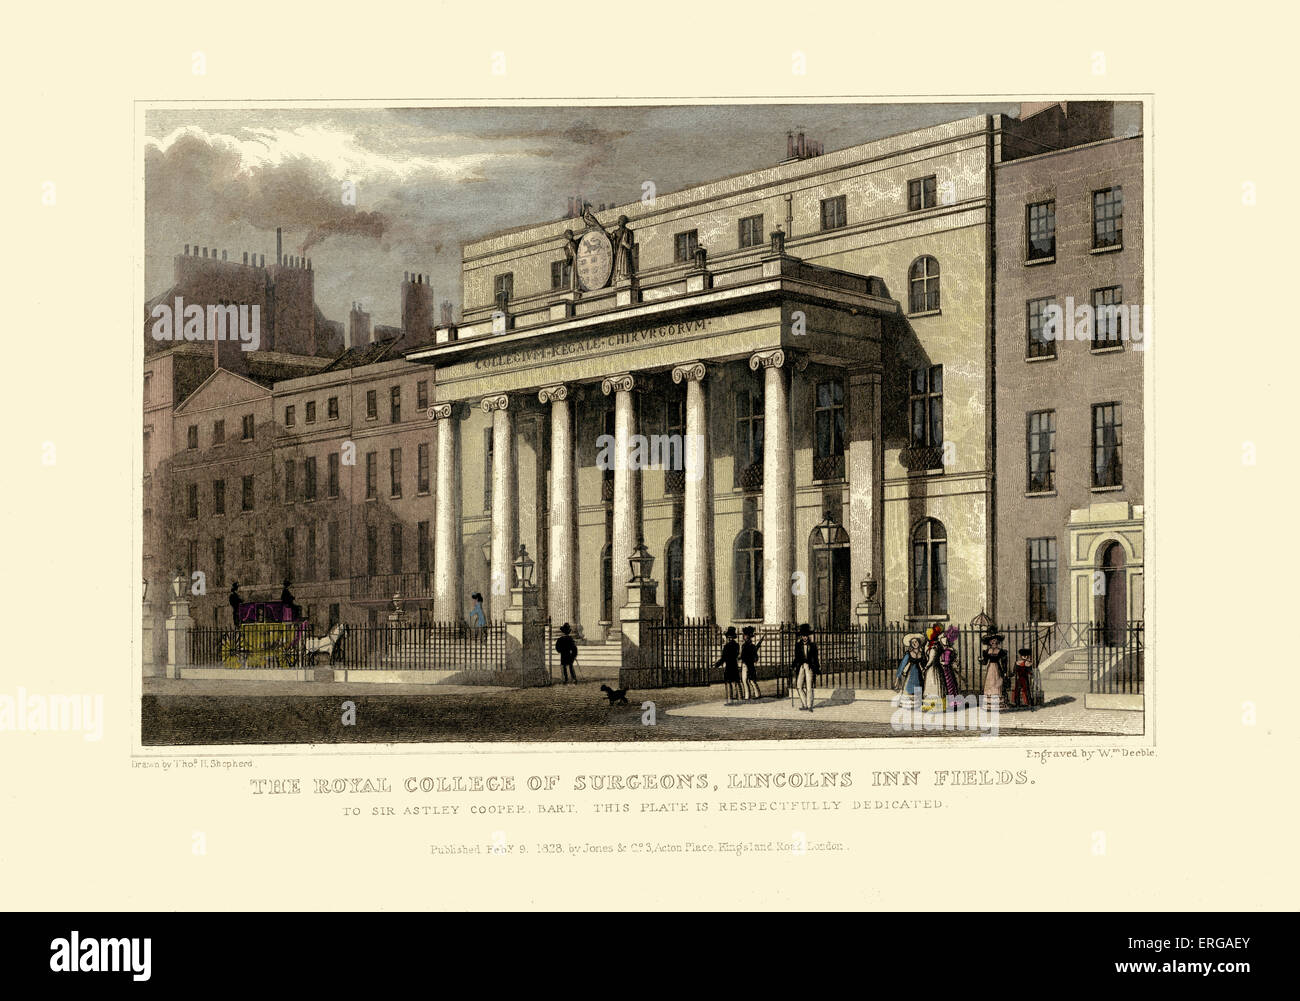 Viste di Londra come il Royal College of Surgeons, Lincolns nei campi. Disegnata da Thomas Hosmer Shepherd 1792 - 1864. Incisi da W. Foto Stock